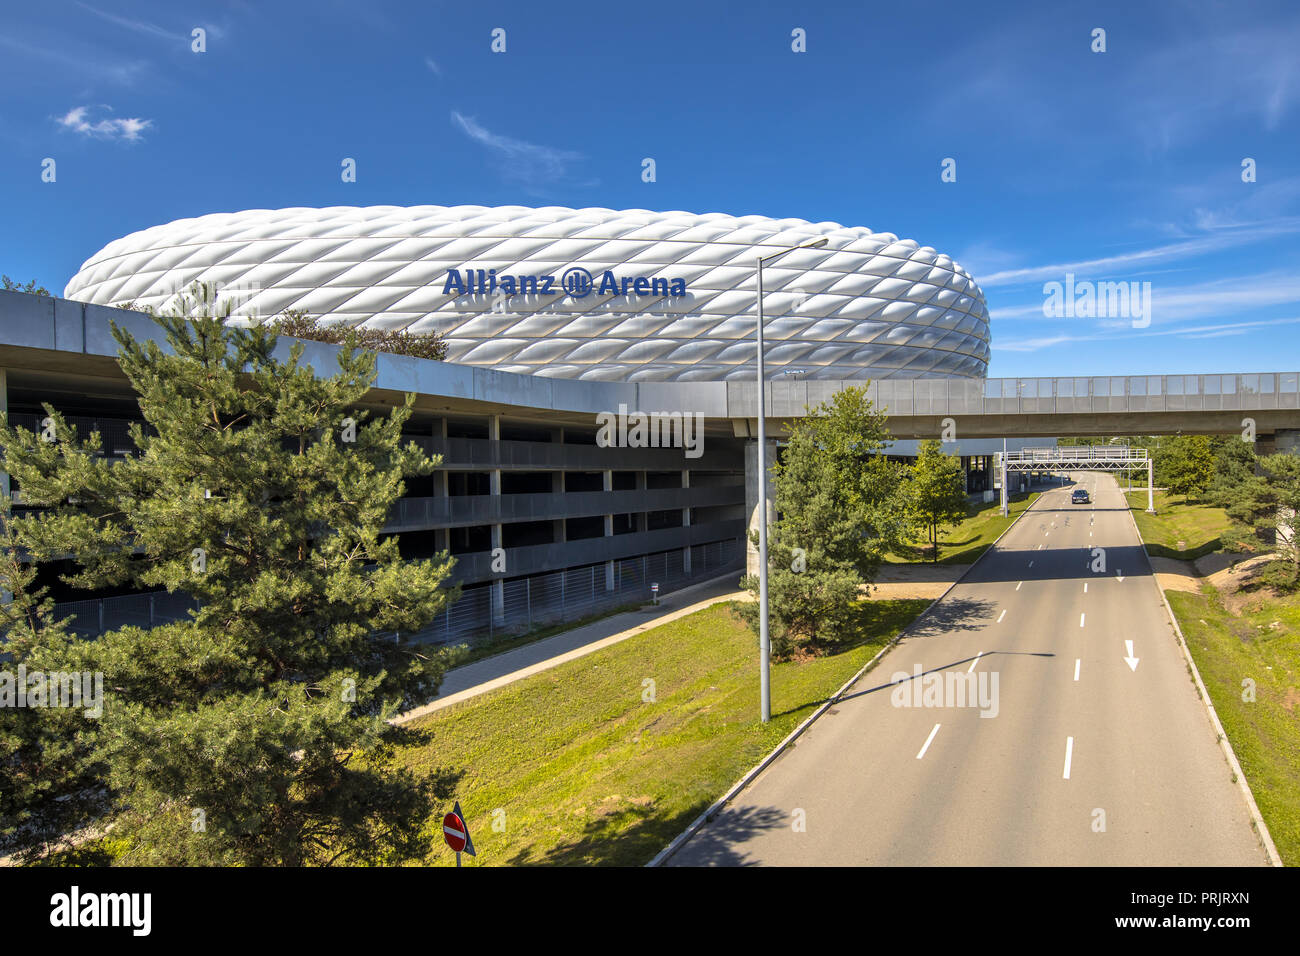 Monaco di Baviera, Germania - 14 August 2017: Strada alla stadio Allianz Arena di Monaco di Baviera, Germania. L'Allianz Arena è la casa lo stadio di calcio FC Bayern Munic Foto Stock